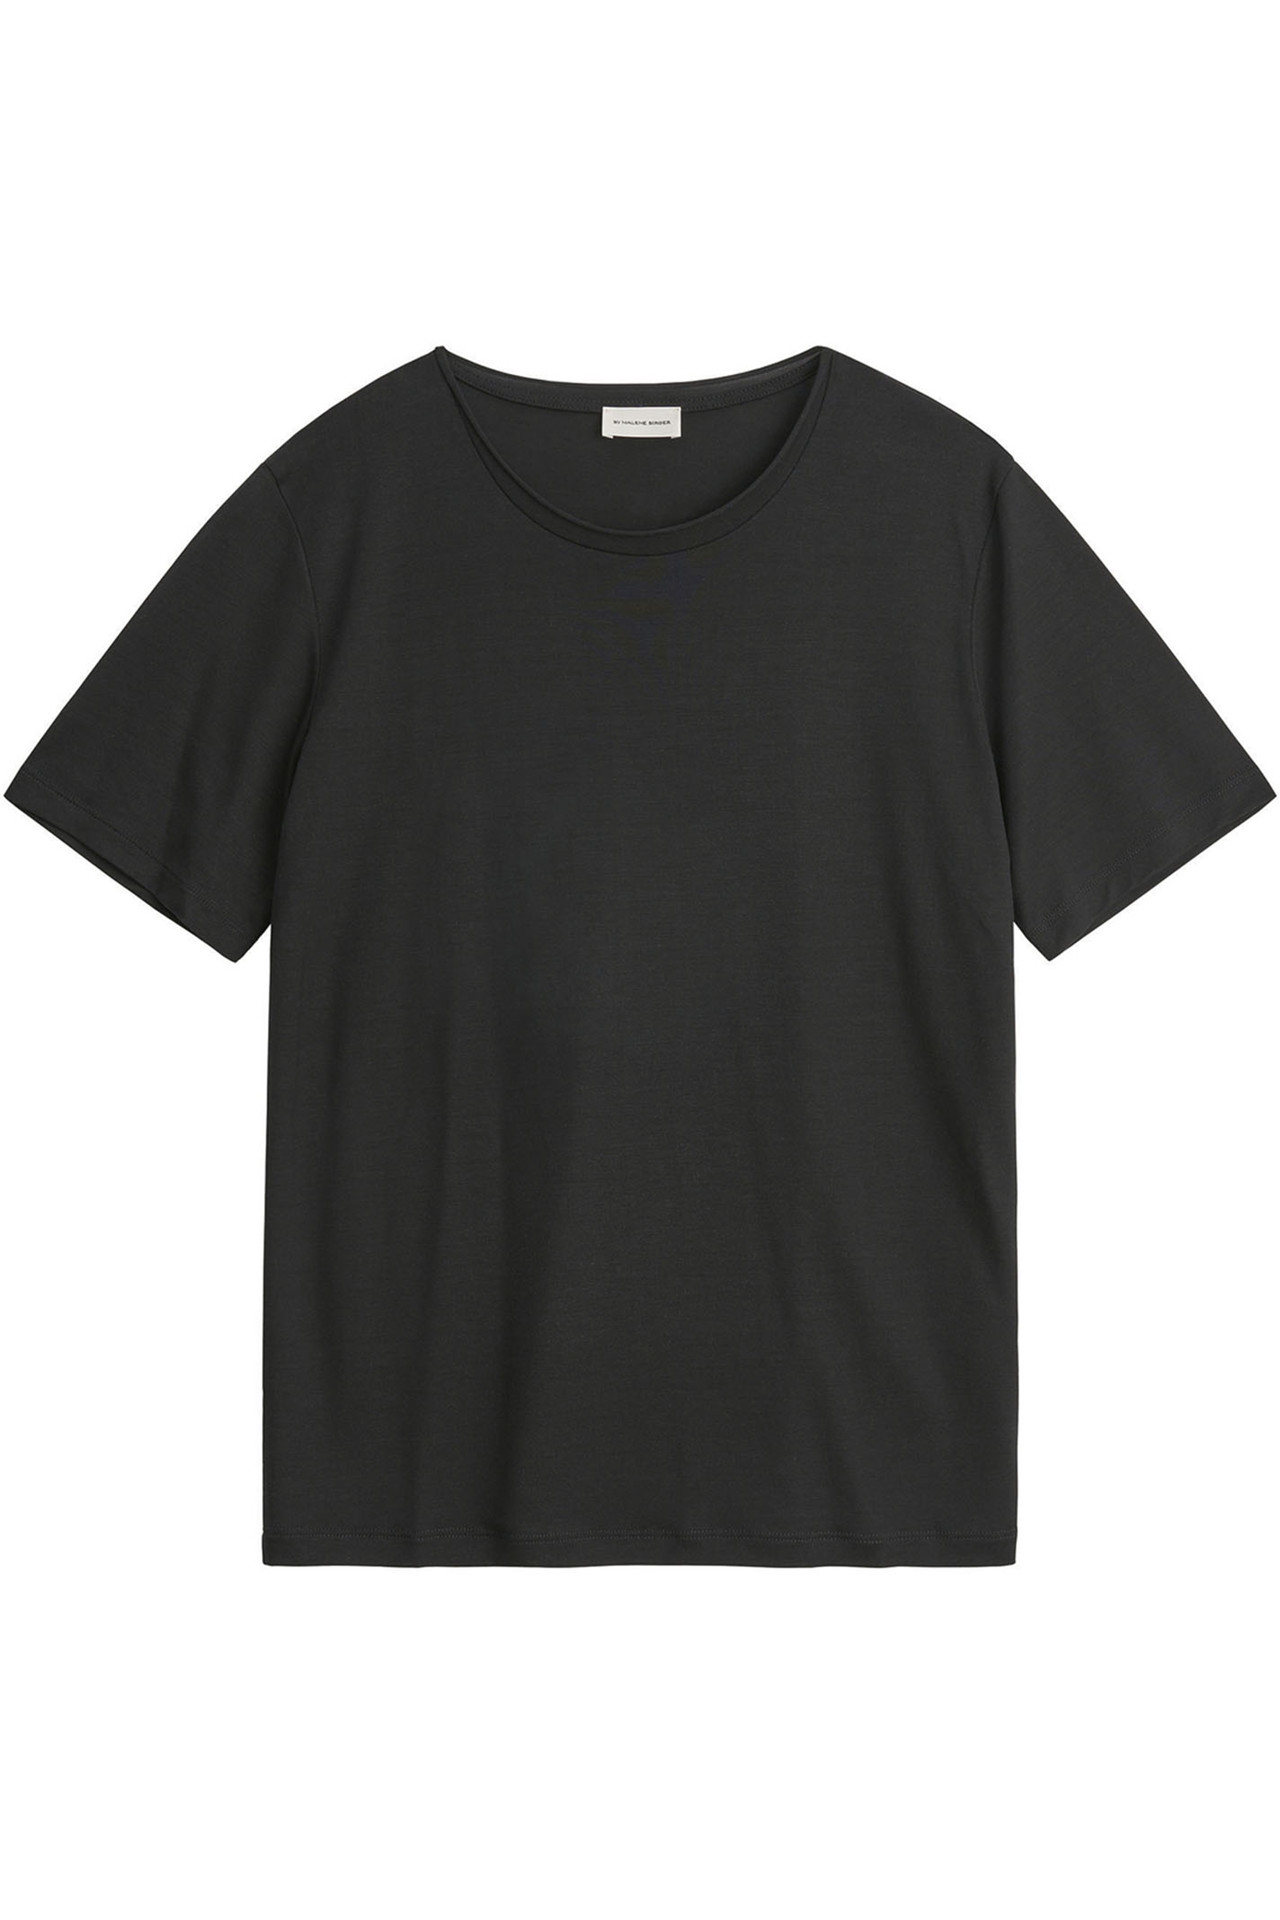 Køb Birger t-shirts online her